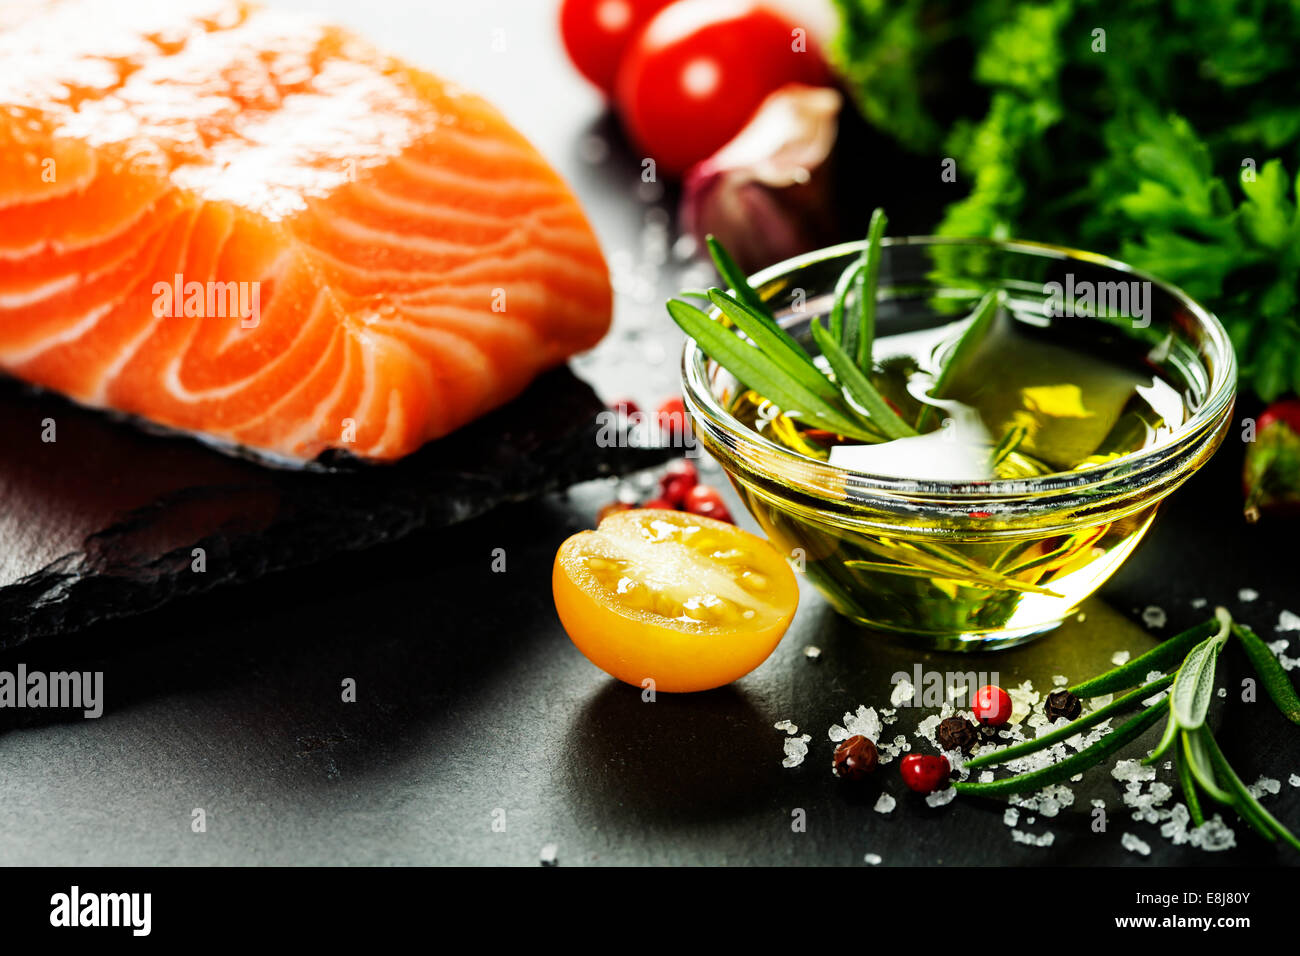 Deliciosa porción de filete de salmón fresco con hierbas aromáticas, especias y verduras - alimentos saludables, dieta o concepto de cocina Foto de stock